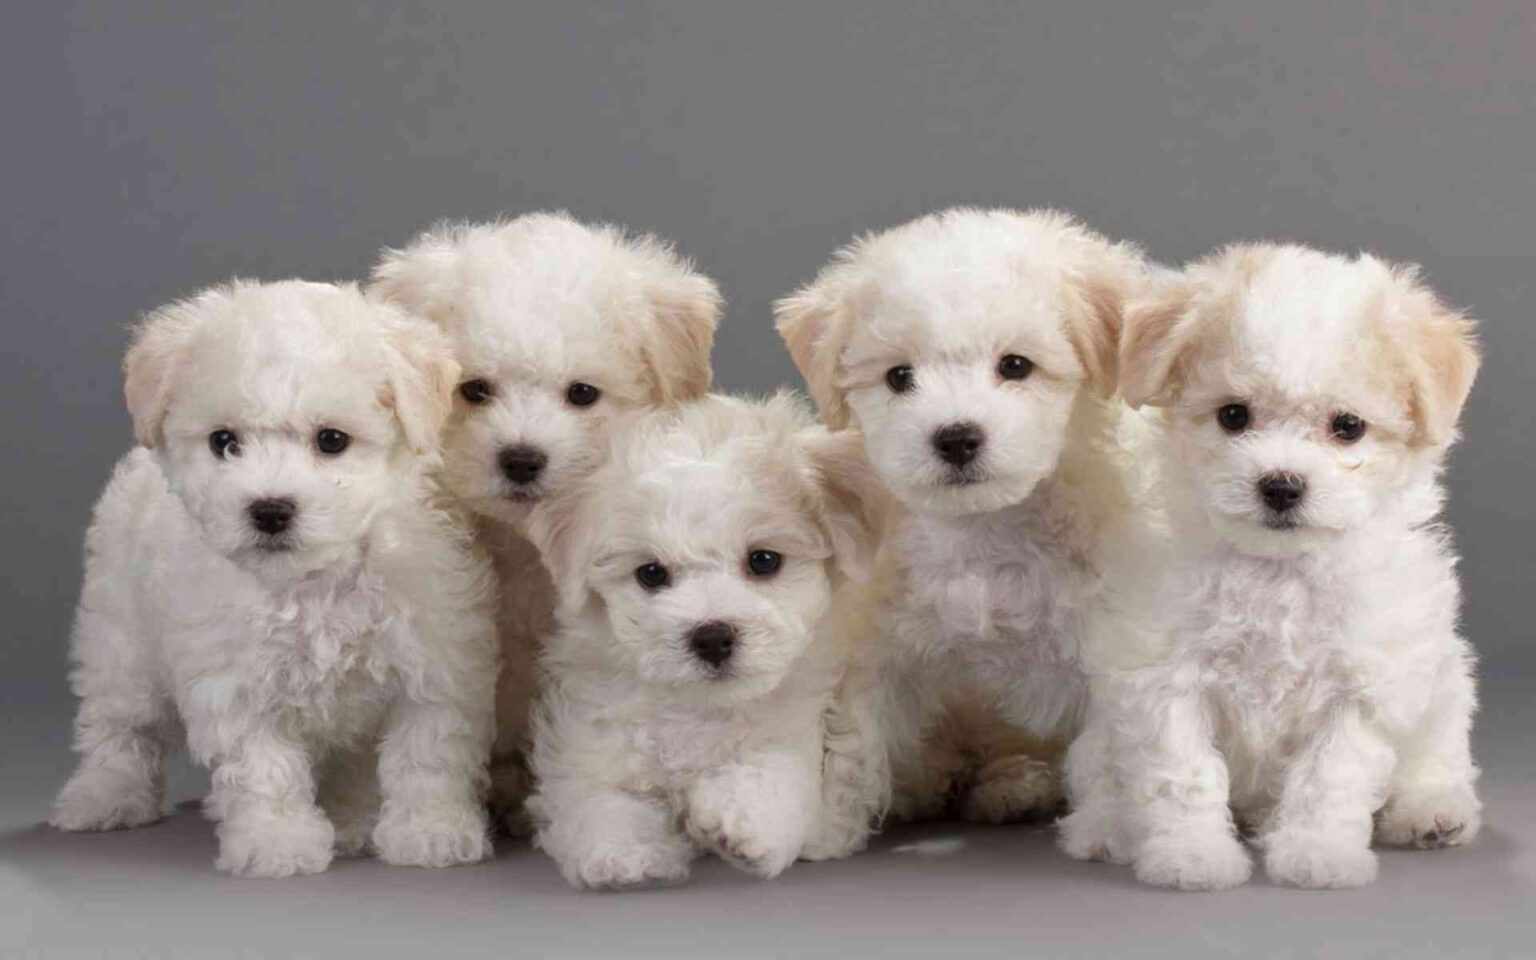 اشترِ كلابًا من Bichon frize في رعنان: كلاب لابد مرحة وحنونة.